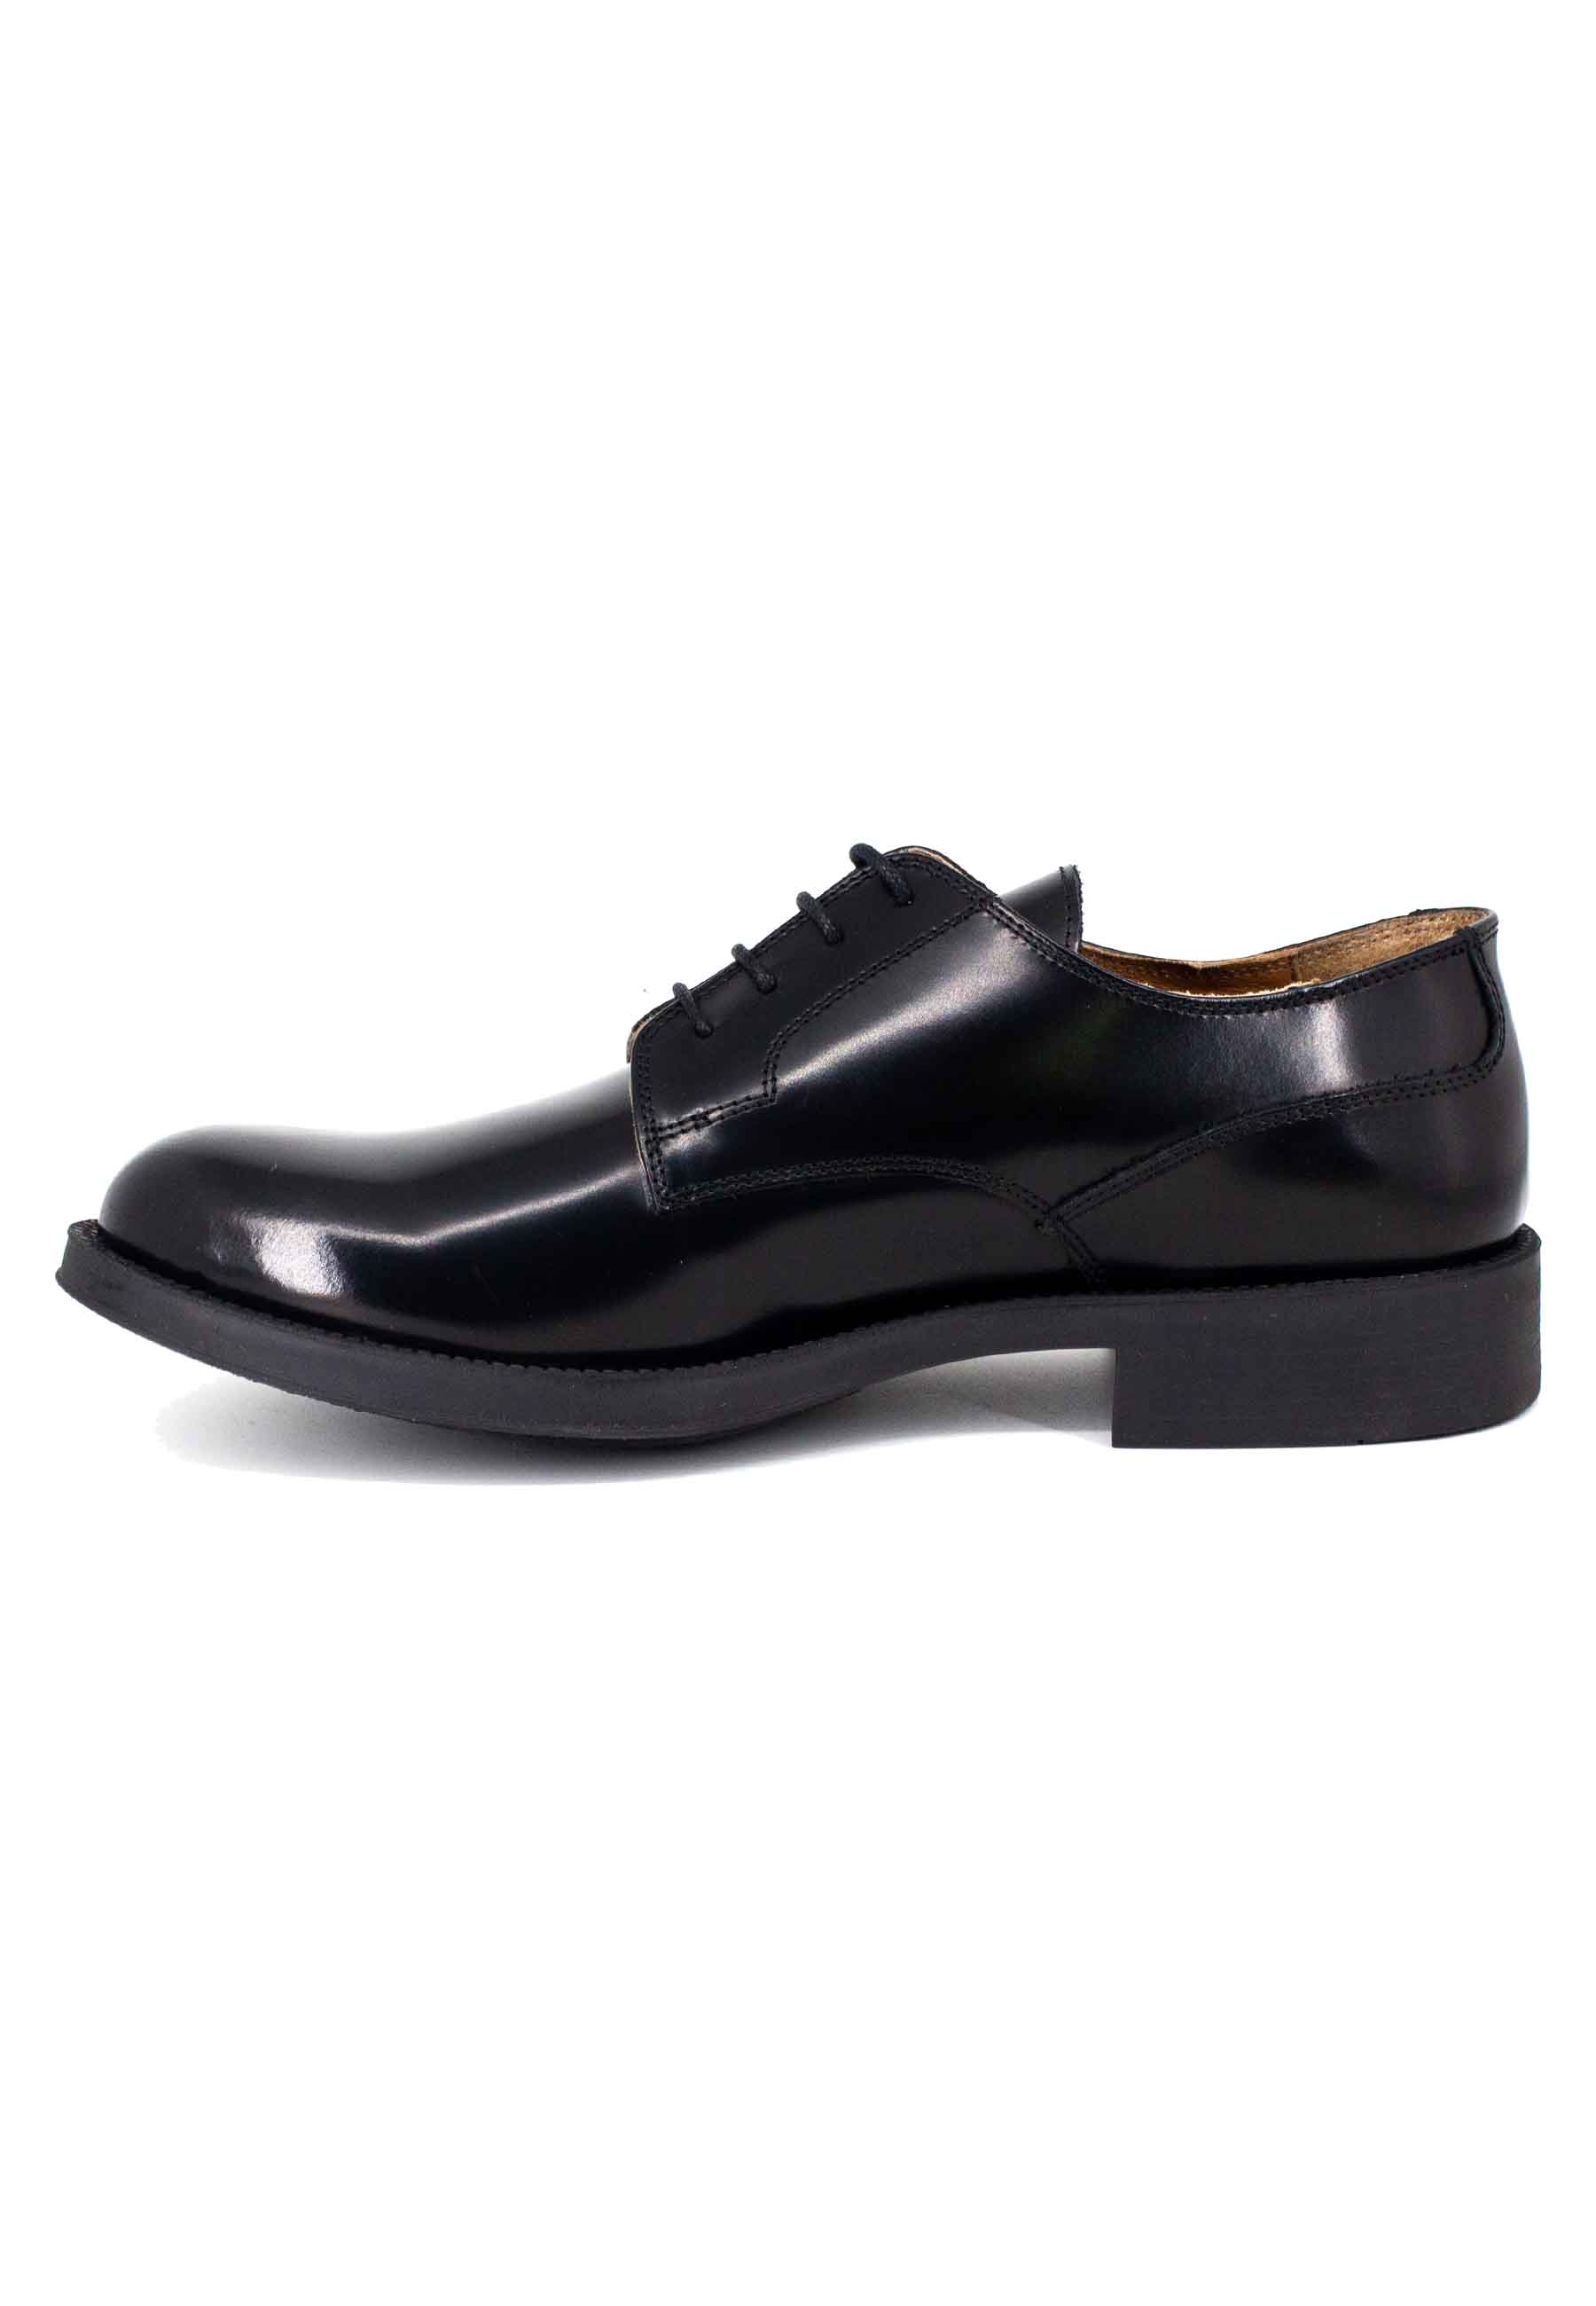 Chaussures à lacets pour hommes en cuir noir avec semelle en caoutchouc